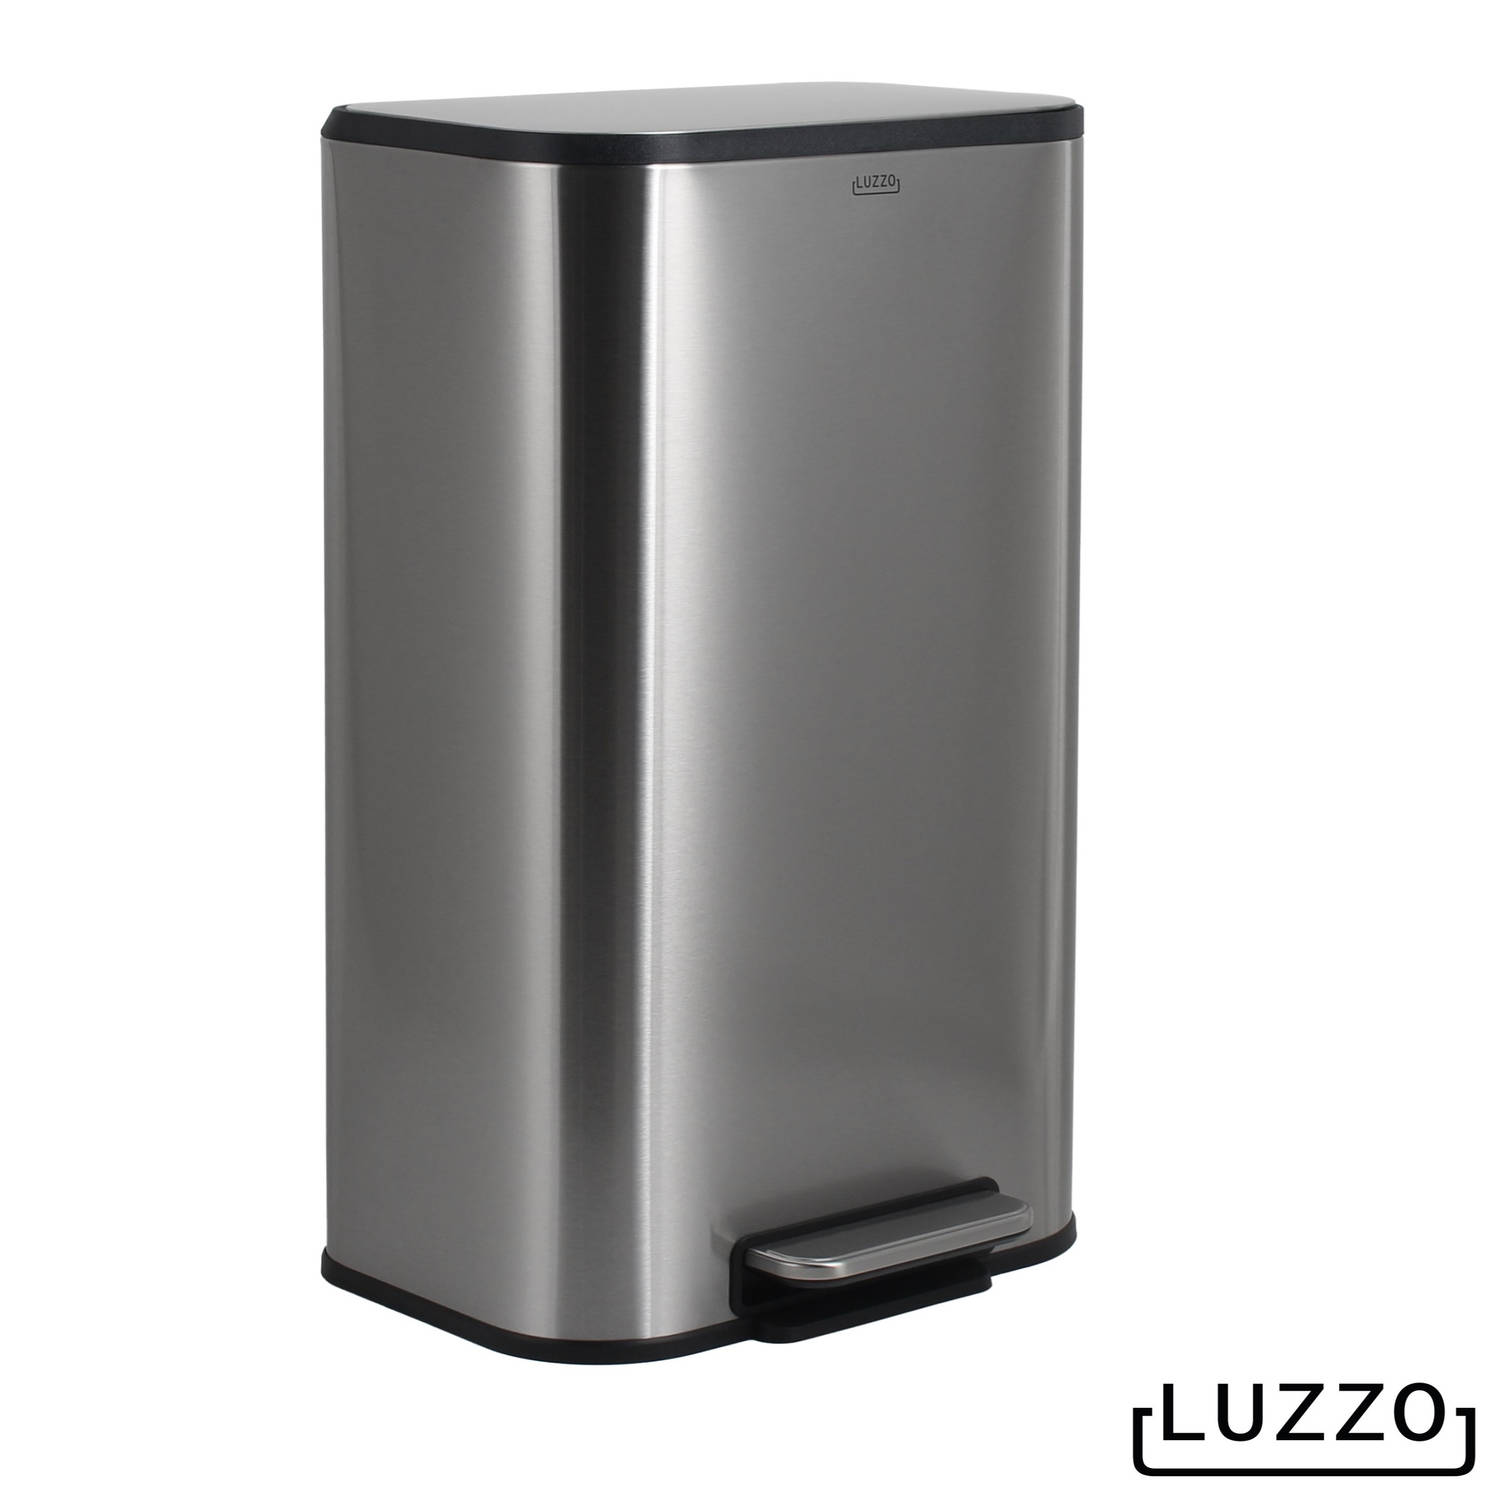 Luzzo® Nevada Pedaalemmer prullenbak 30 liter Mat RVS